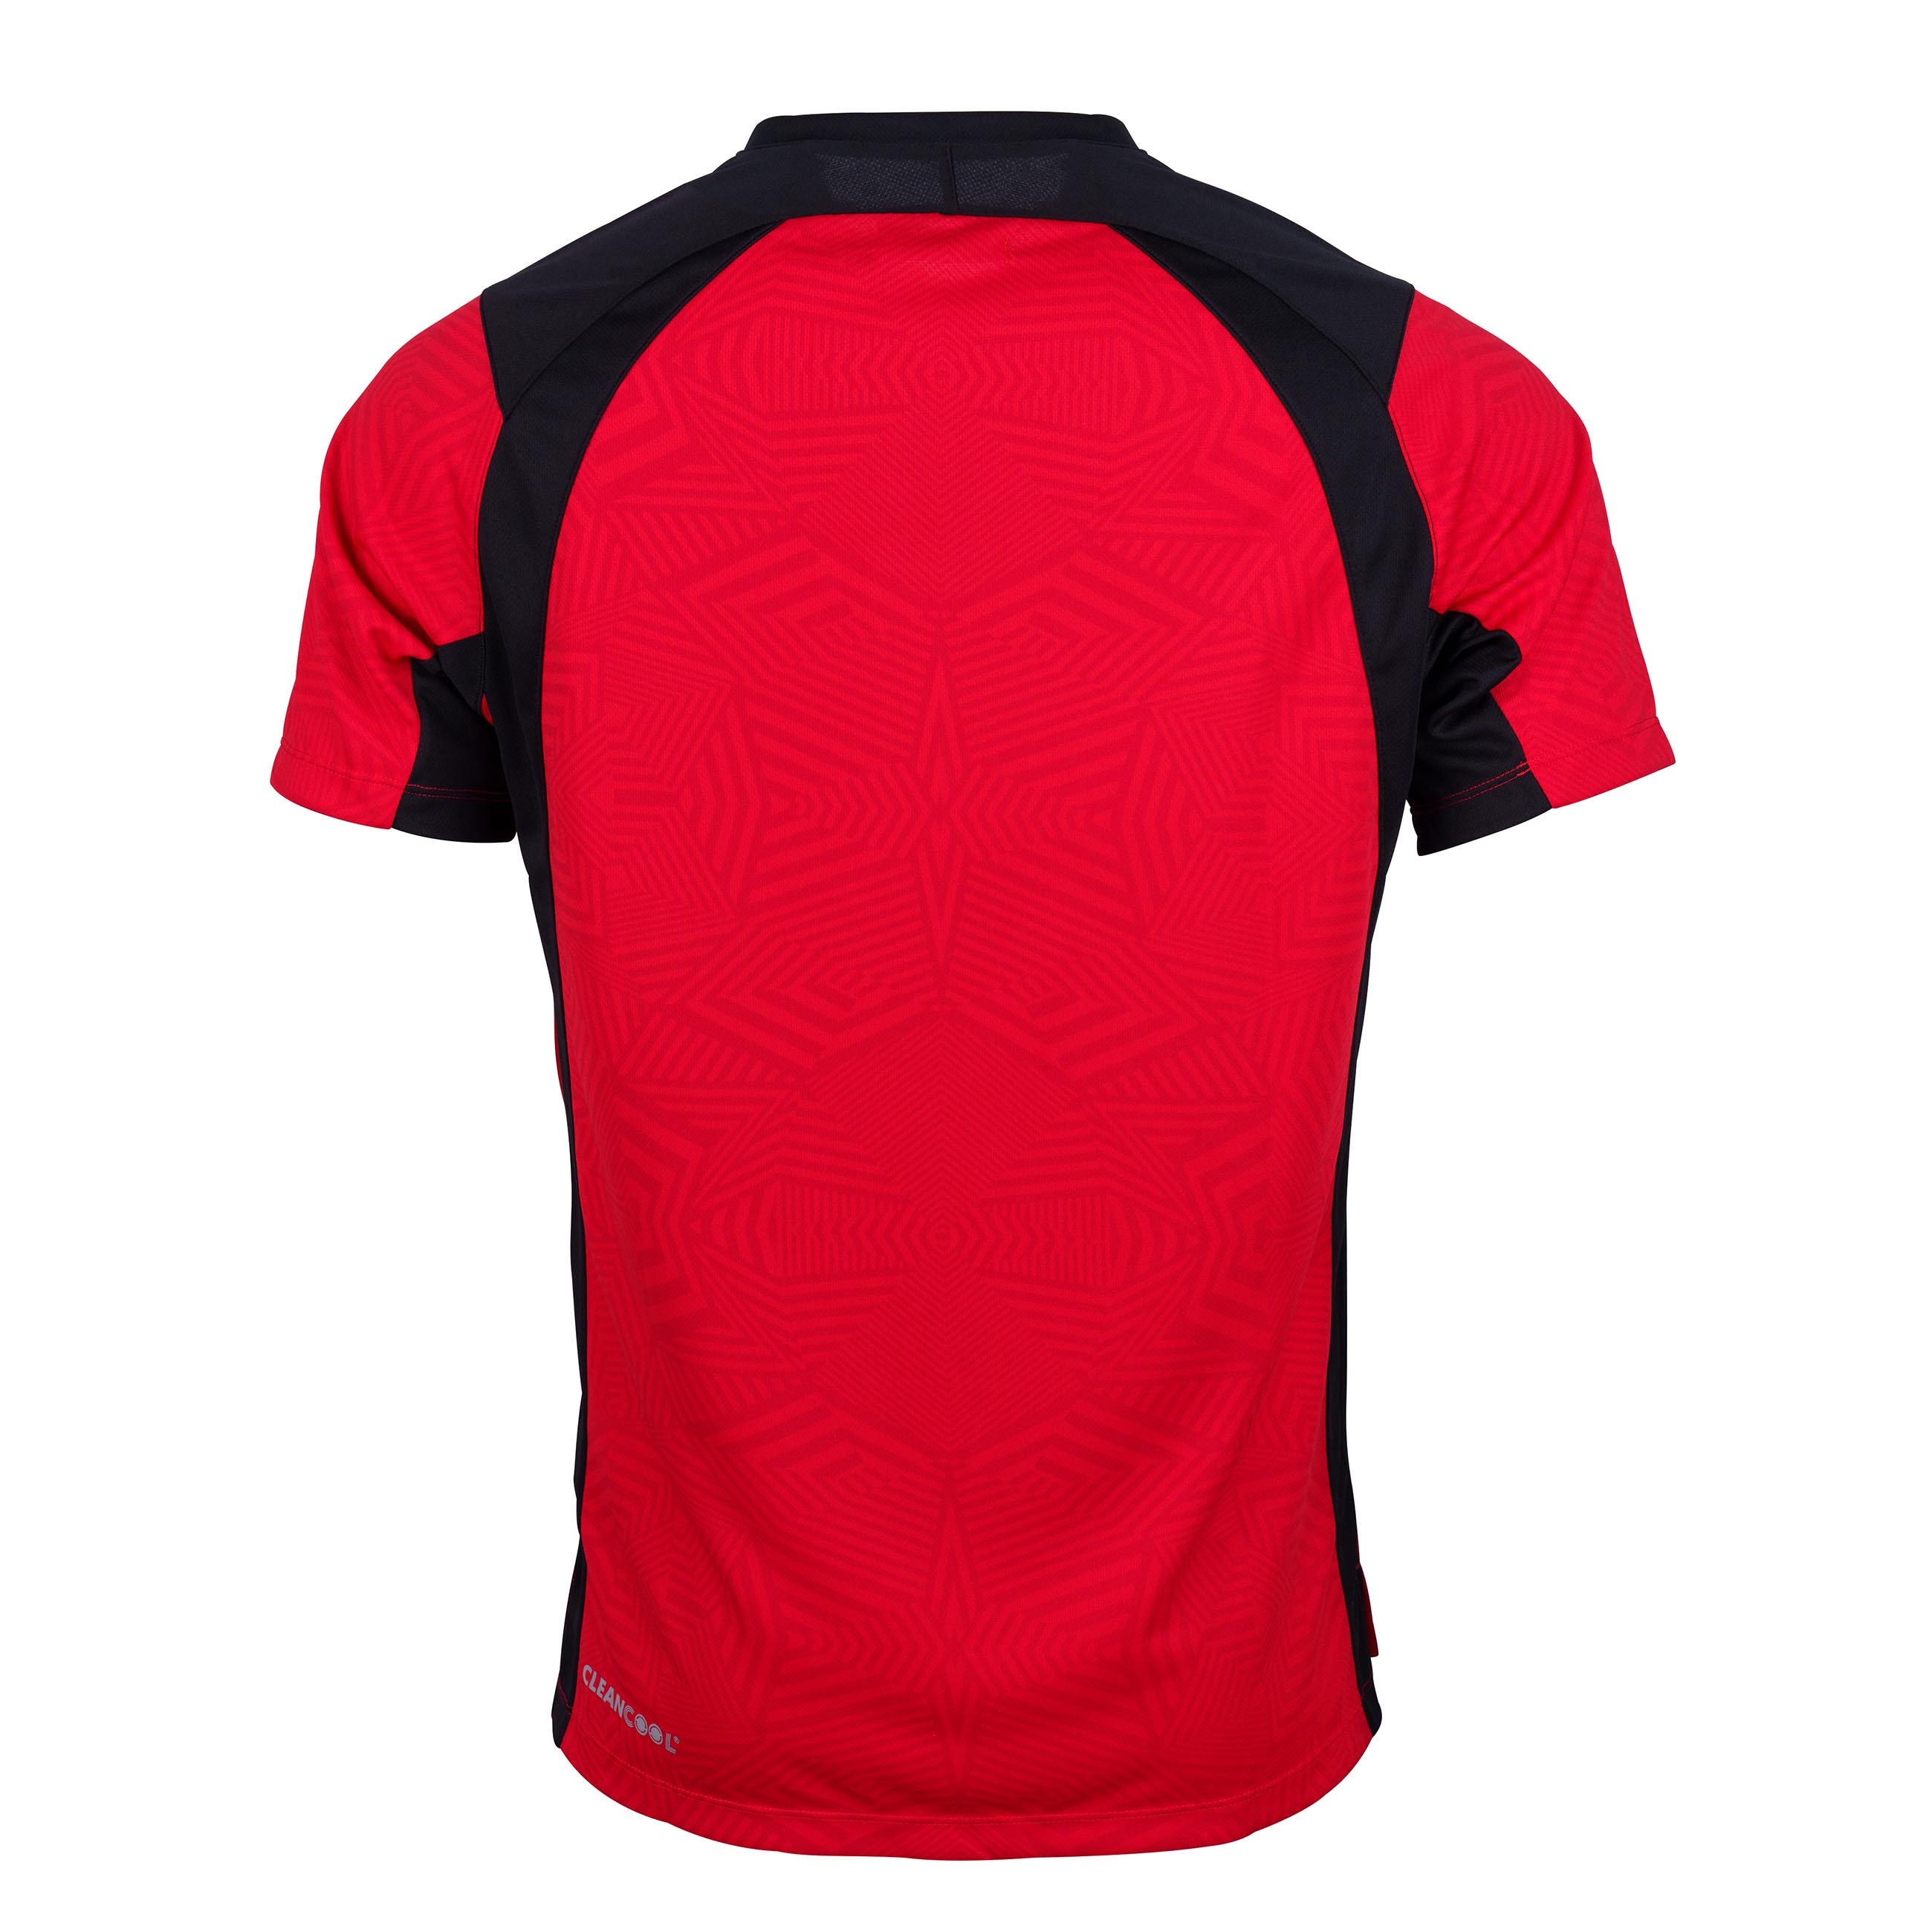 Pro T20 Short Sleeve Junior Shirt